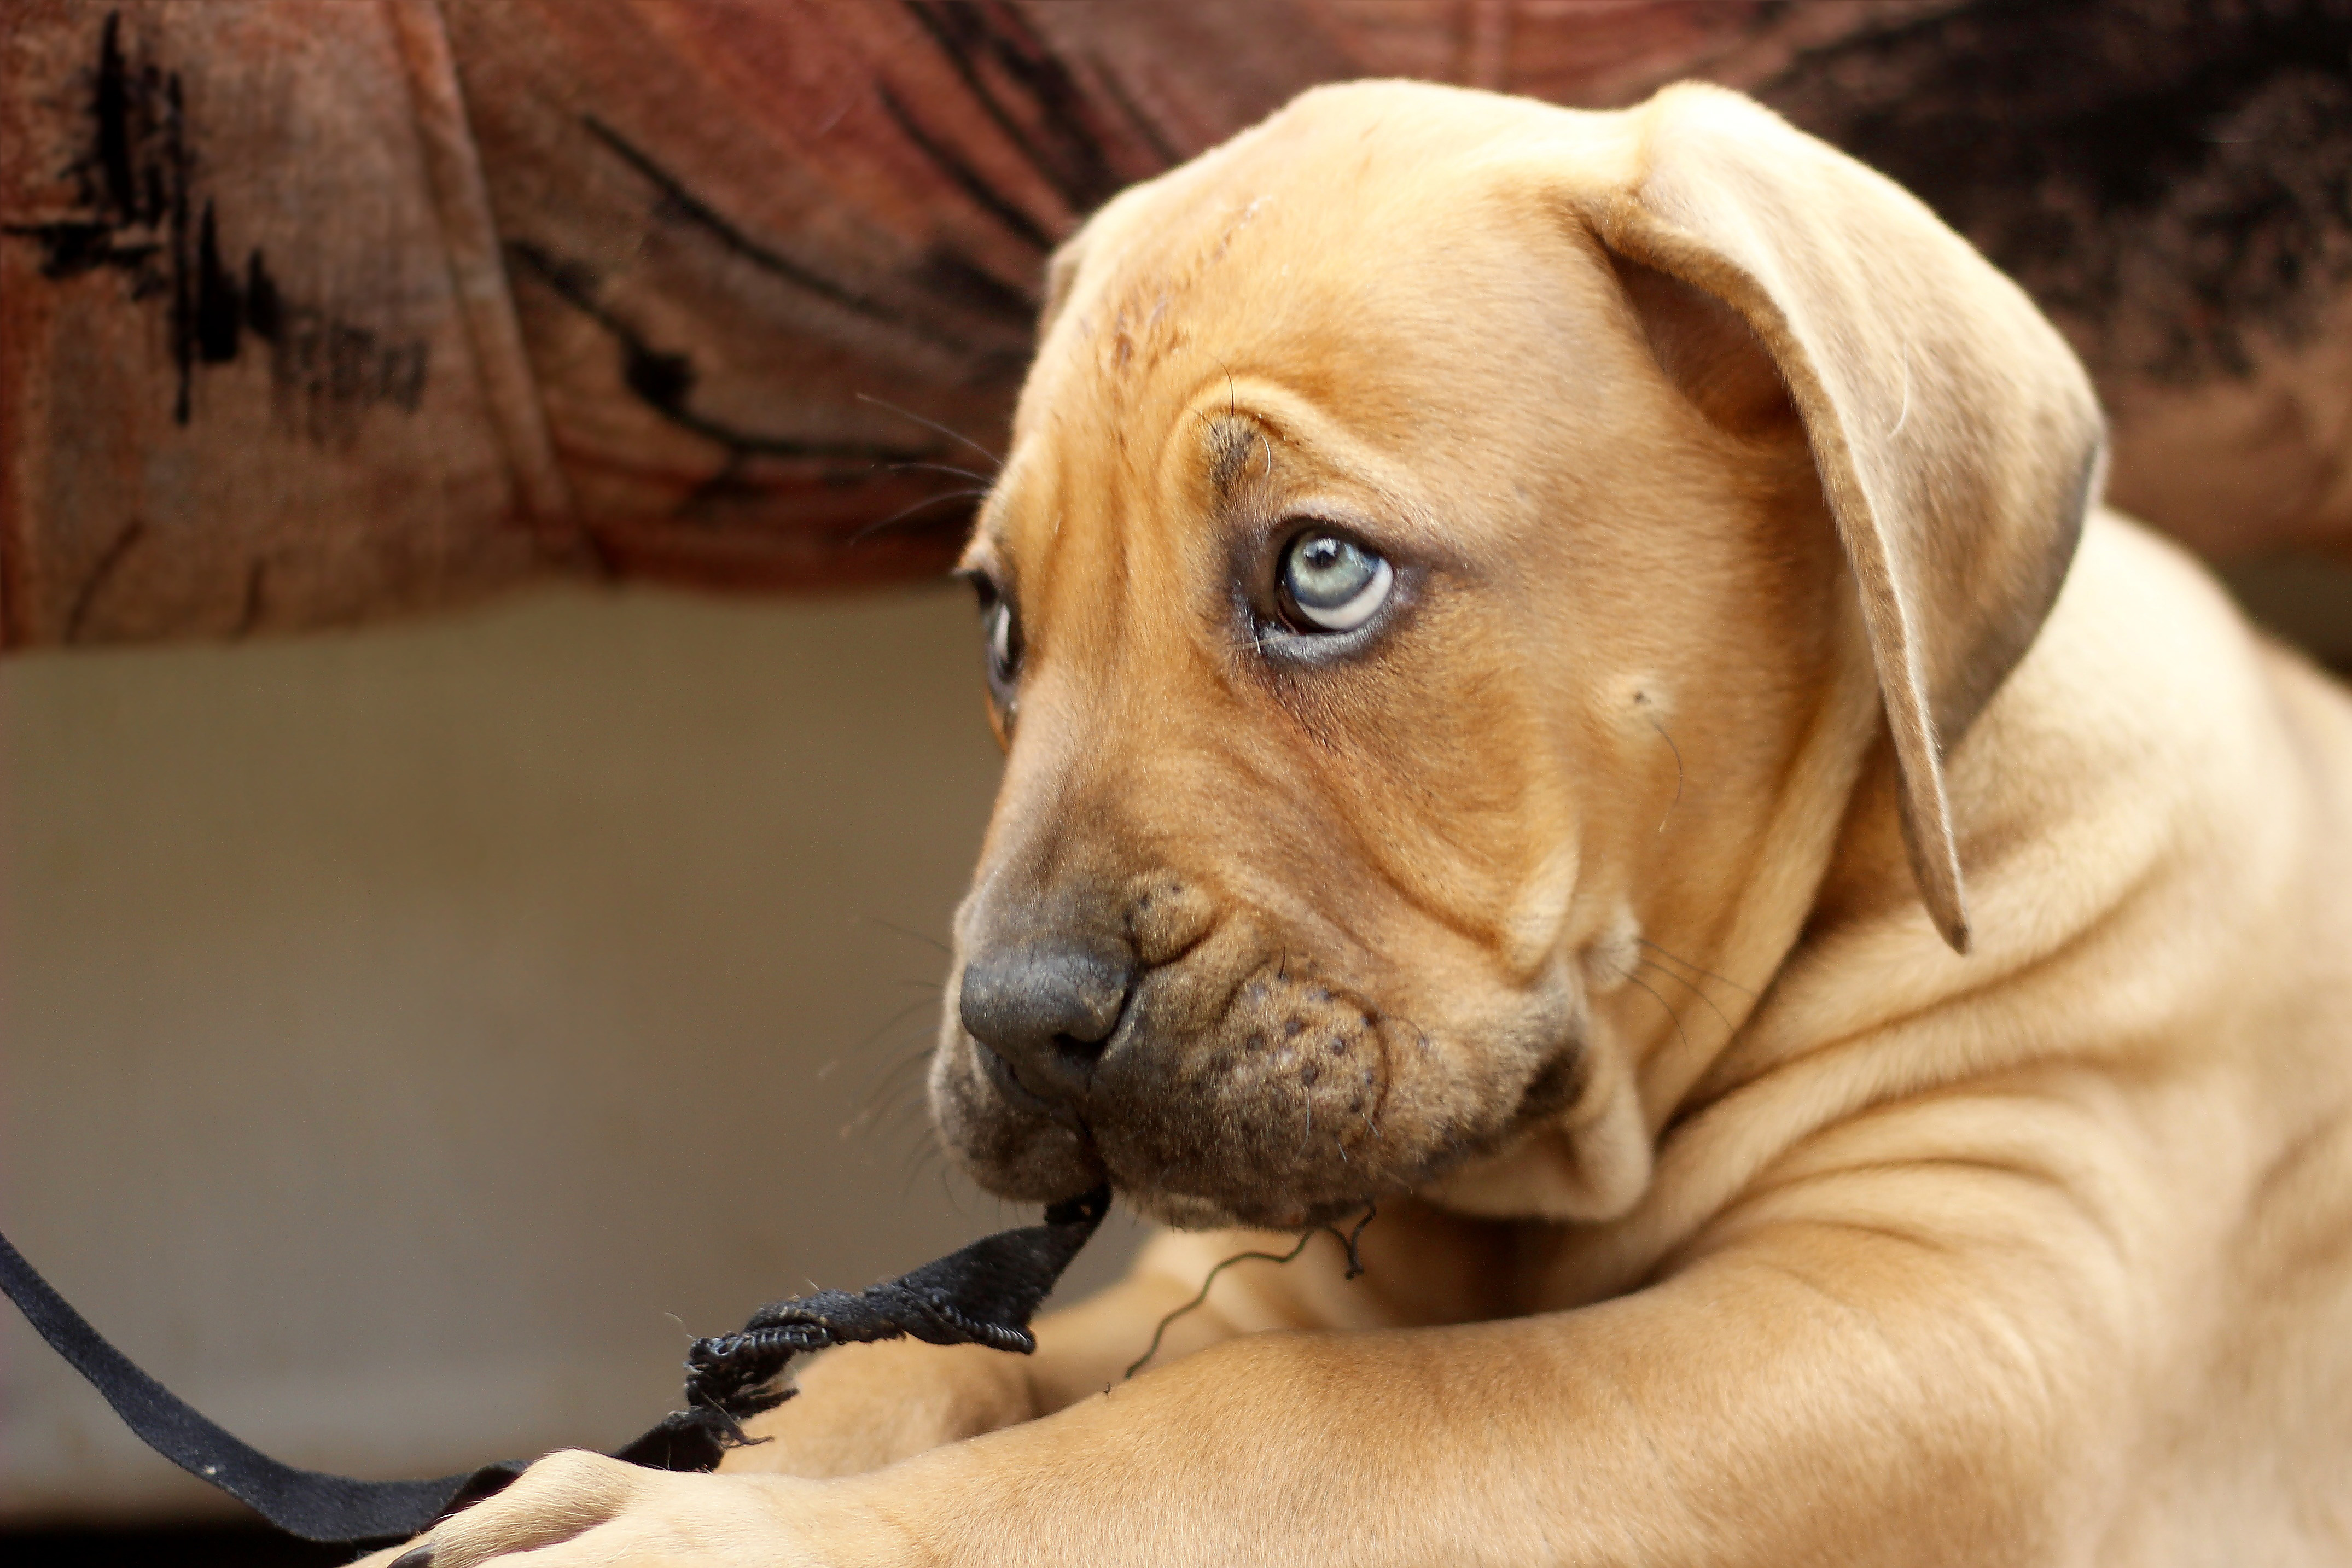 sad puppy with pretty eyes